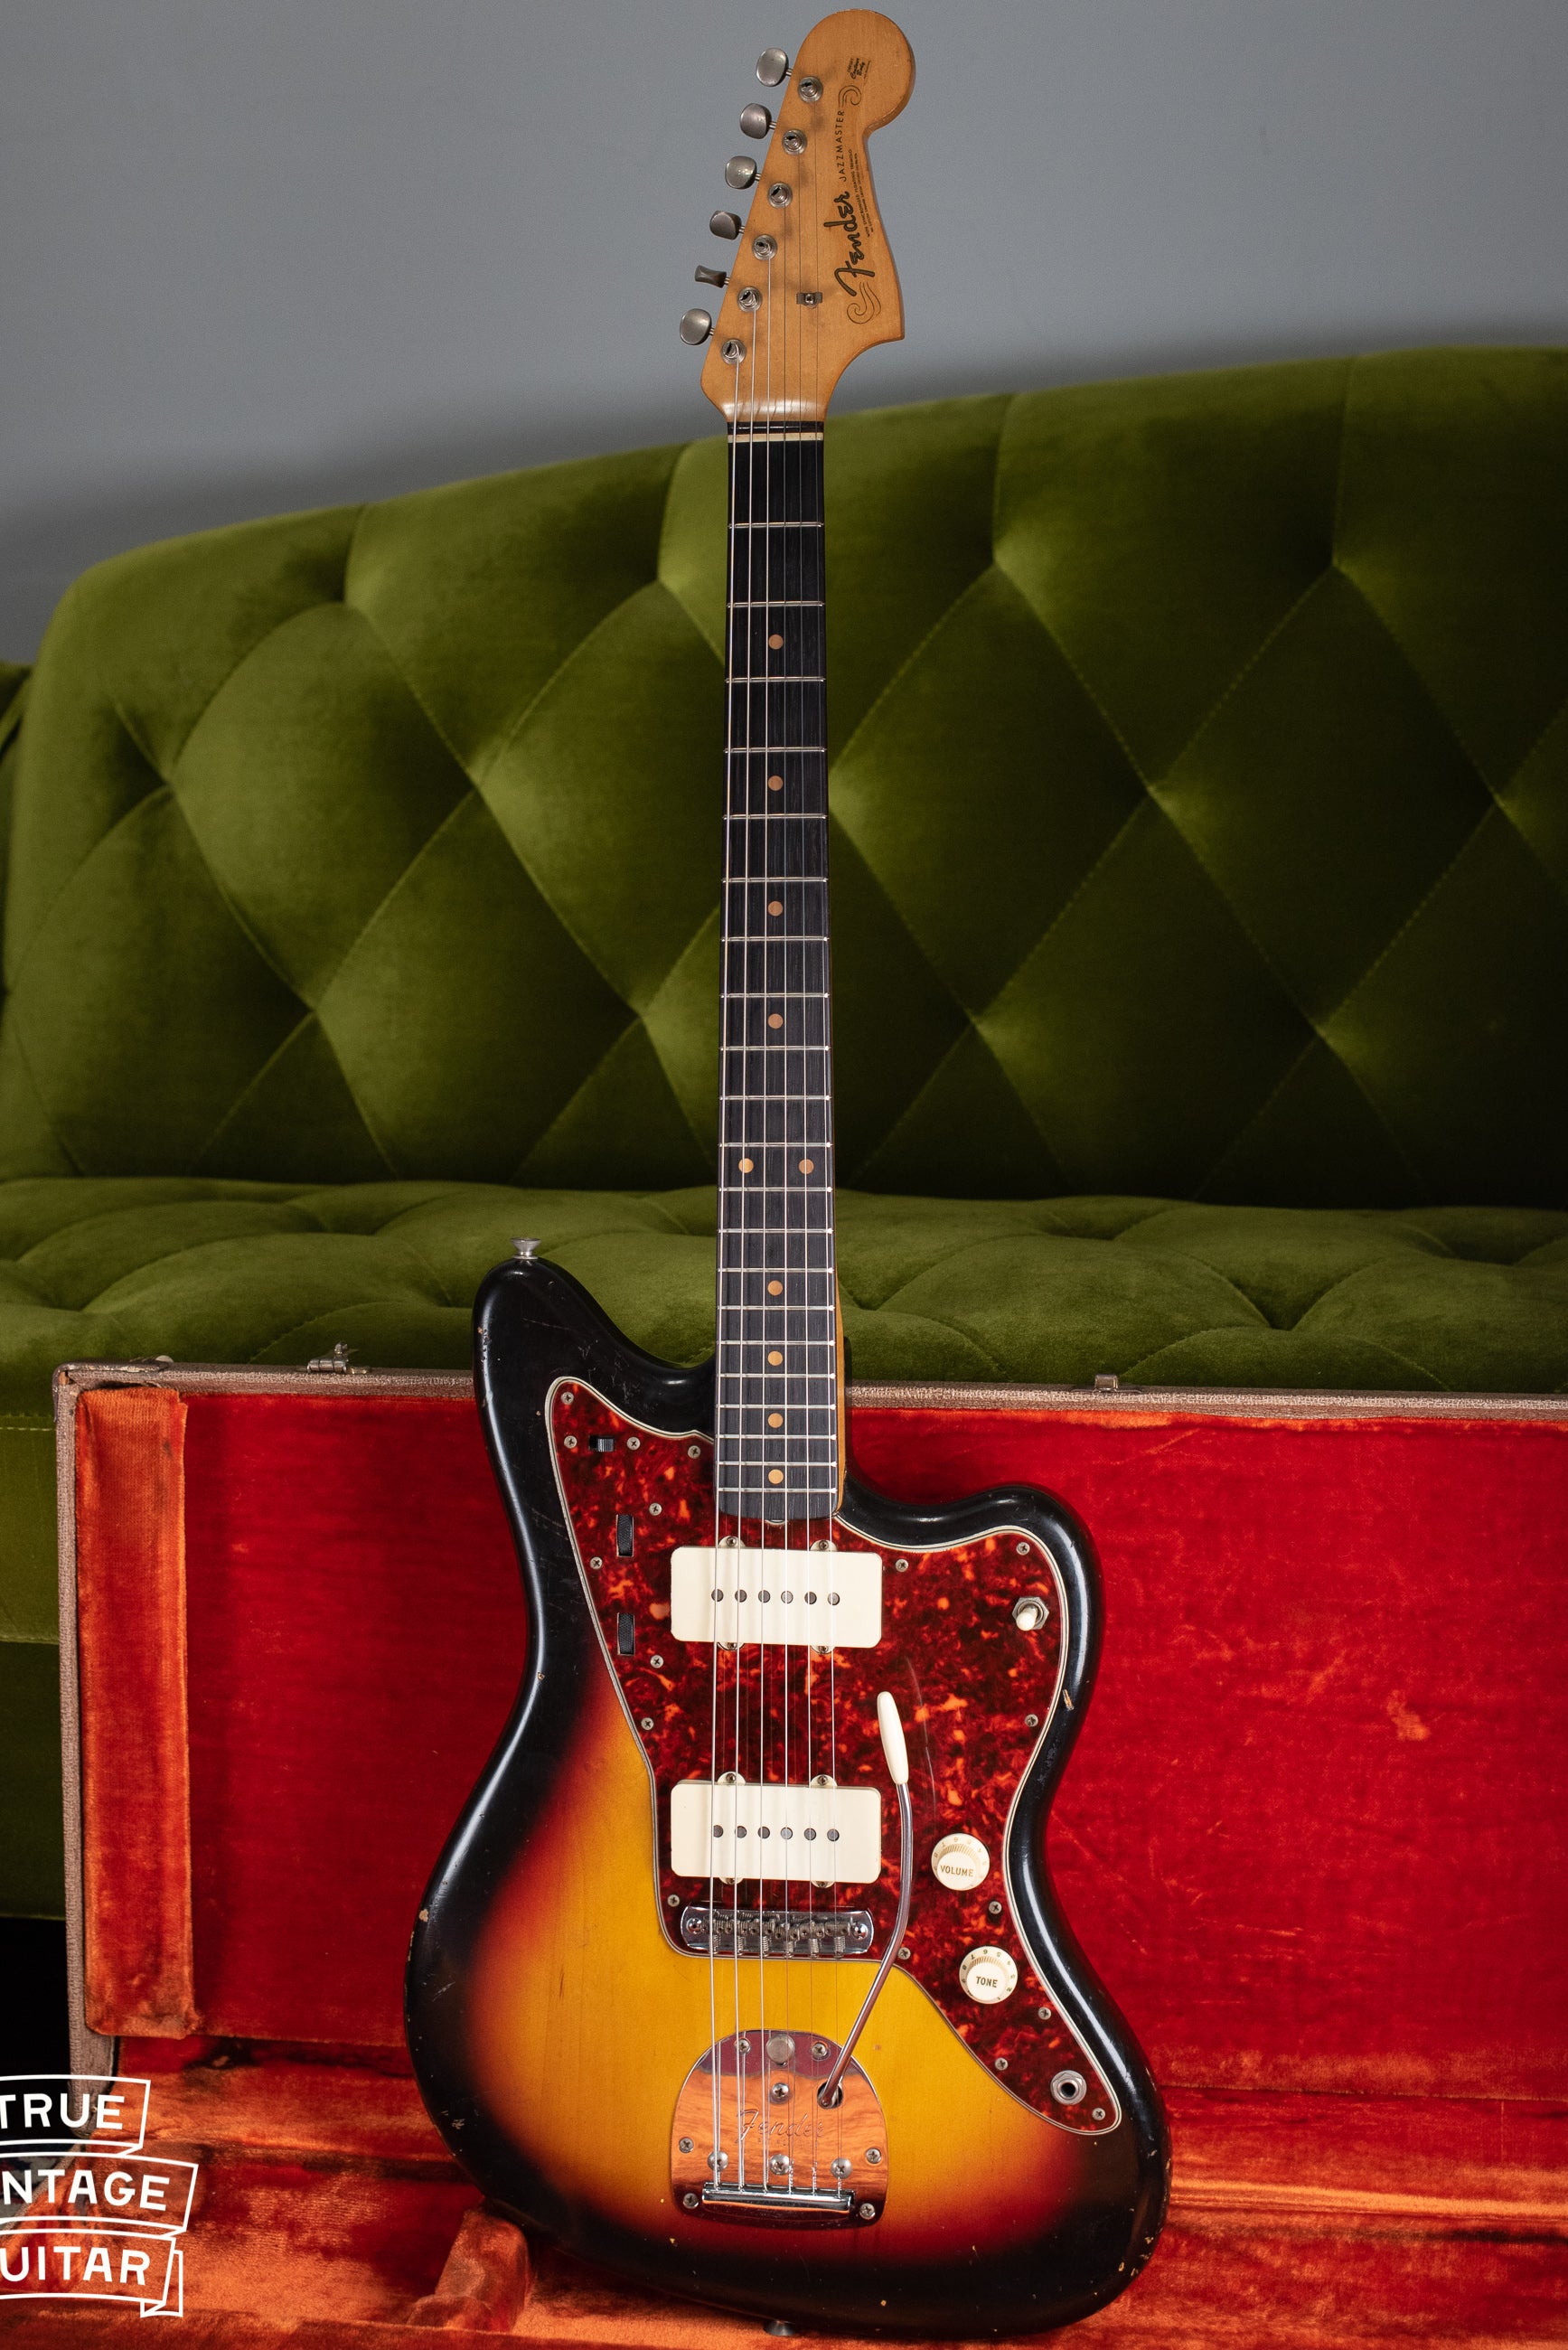 Vintage 1963 Fender Jazzmaster electric guitar